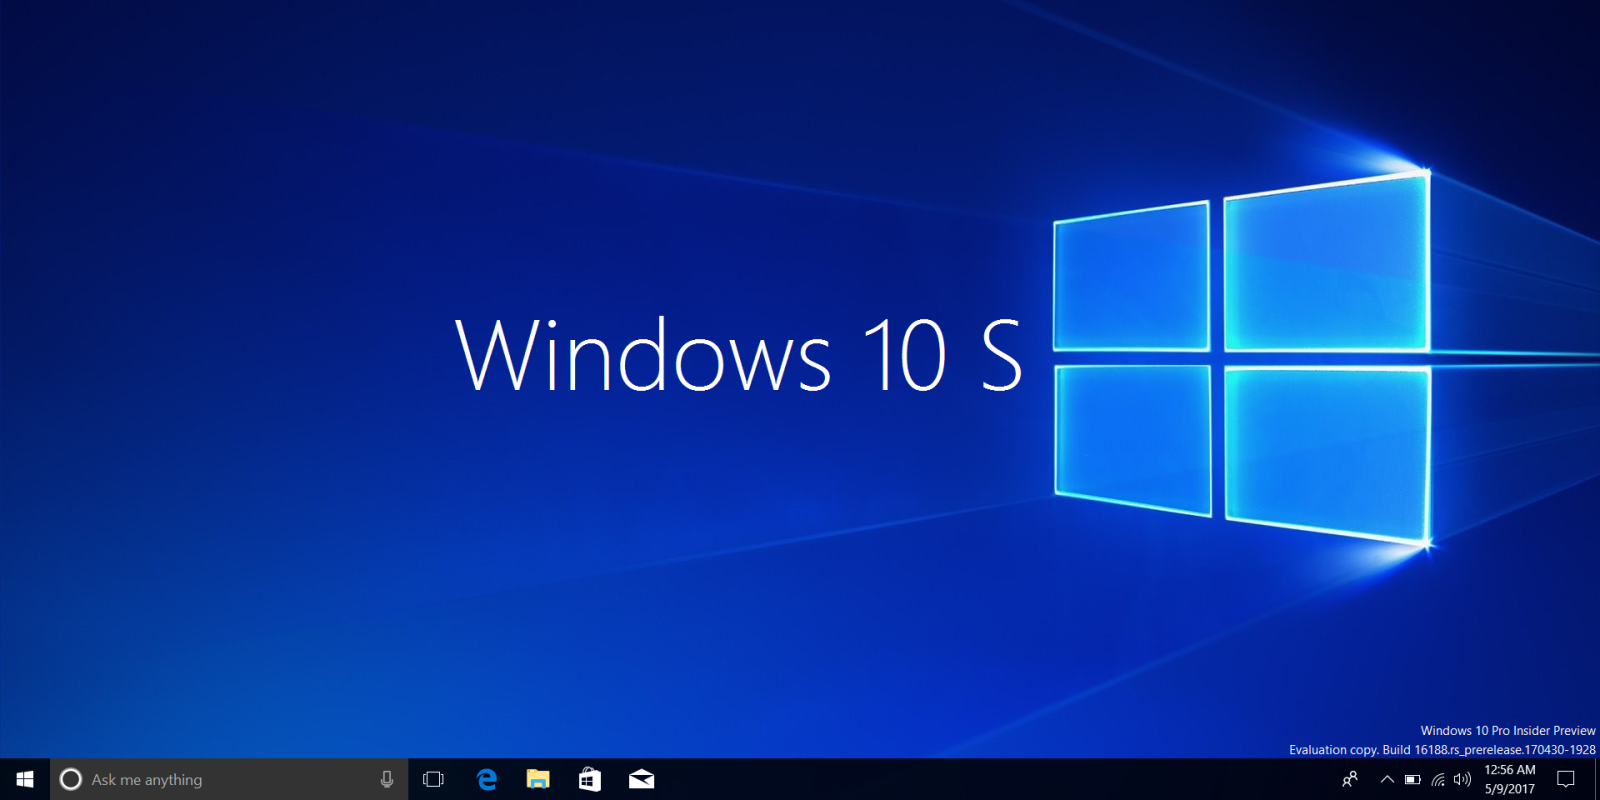 Hướng dẫn tải về ISO Windows 10 S từ Microsoft - Fptshop.com.vn